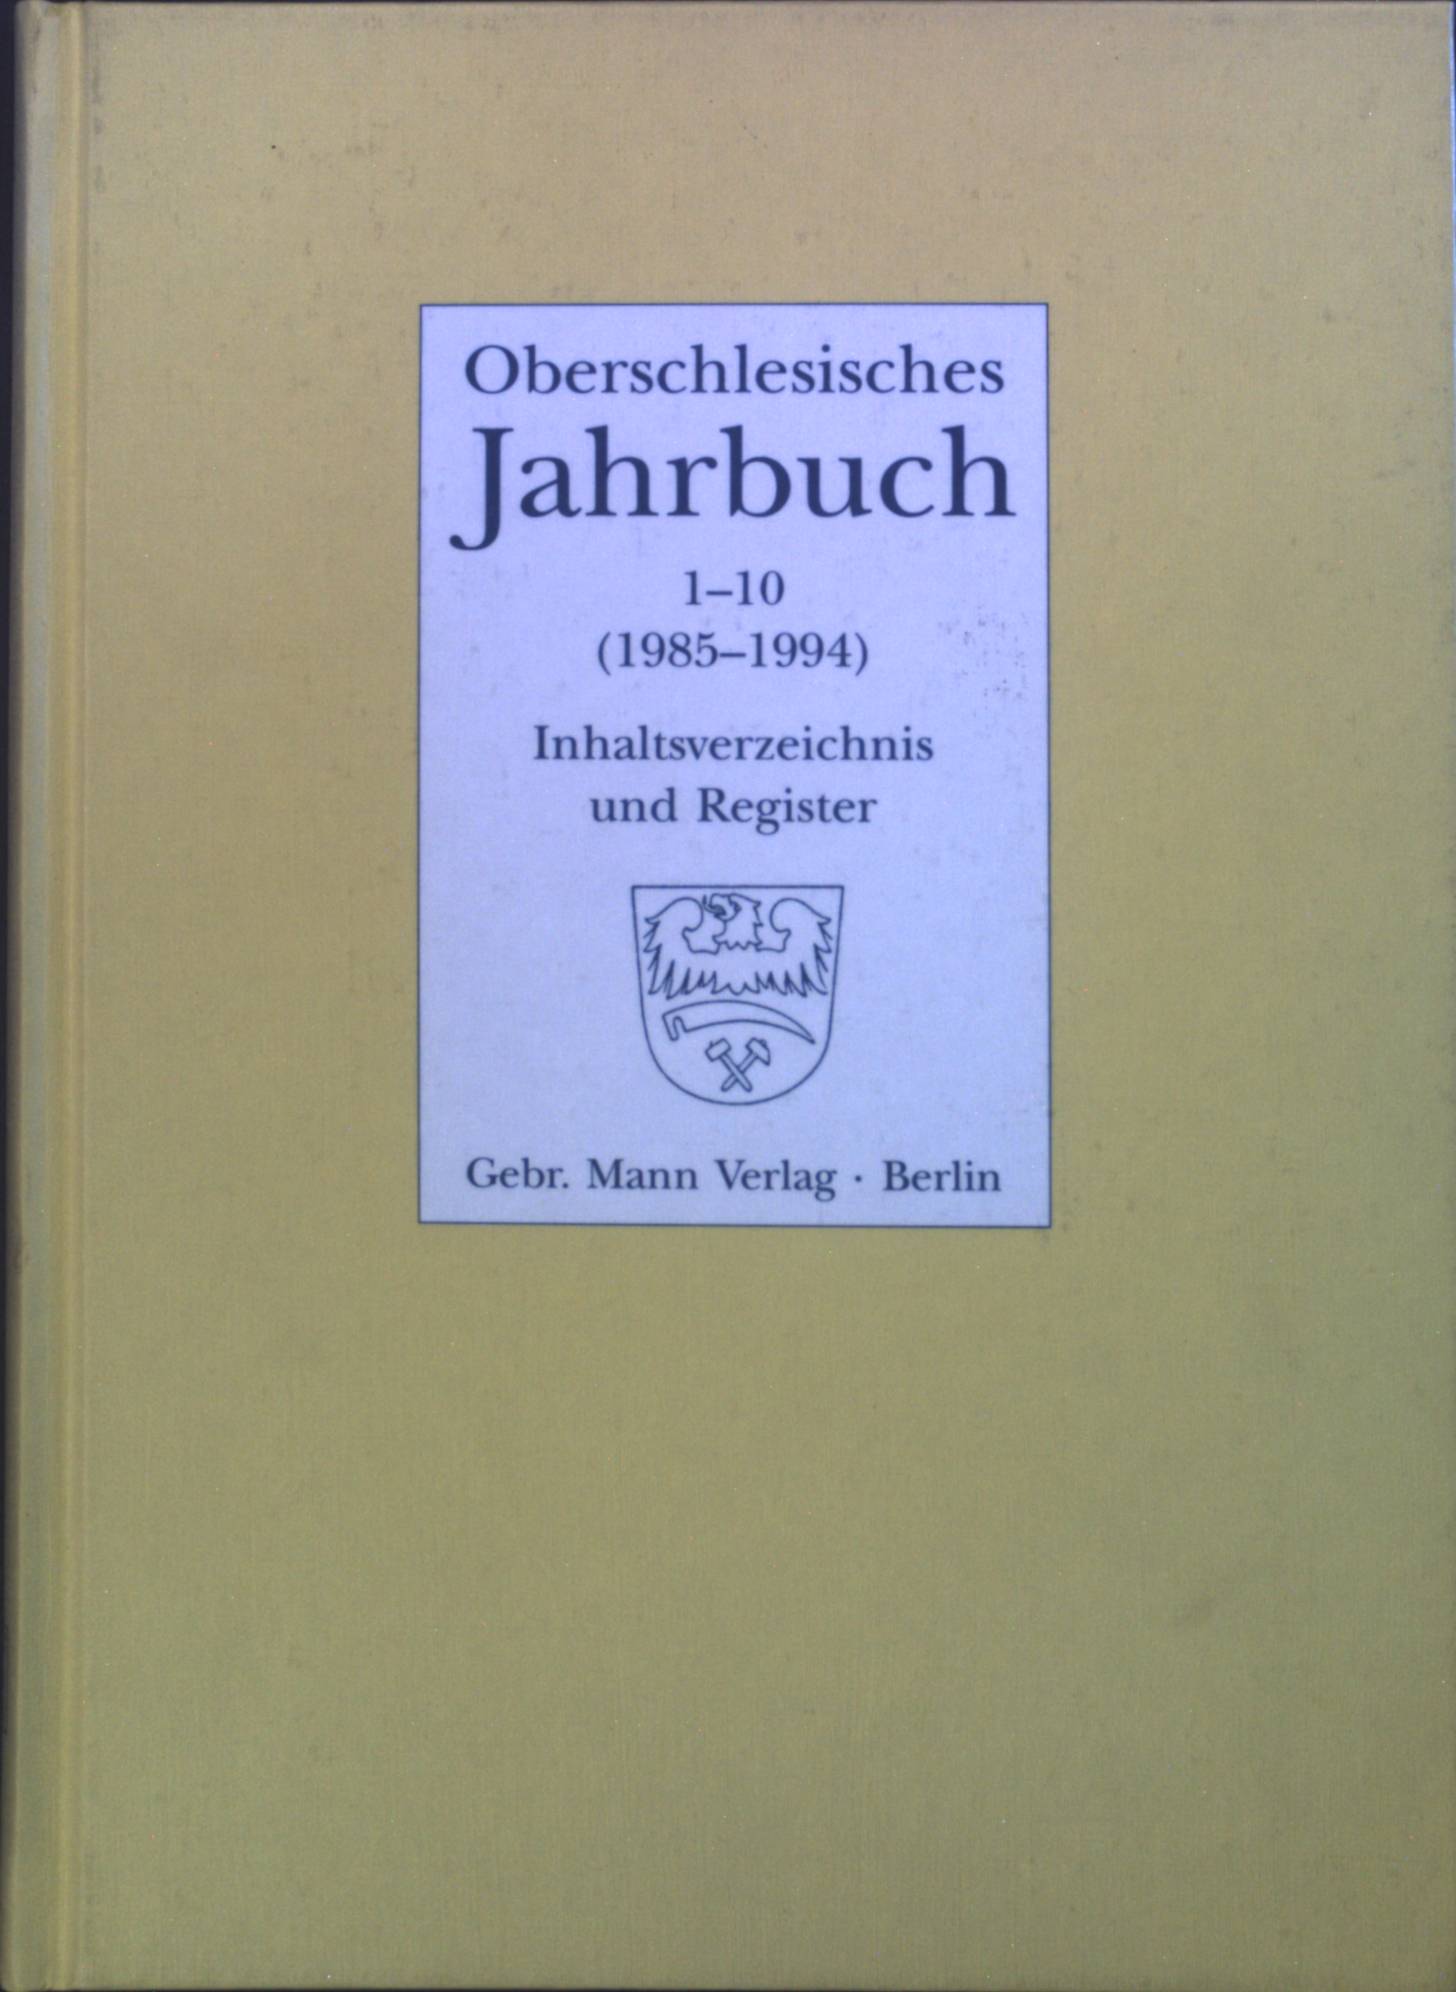 Oberschlesisches Jahrbuch 1-10 (1985-1994). - Chmiel, Peter, Andreas Gayda und Hans L Abmeier